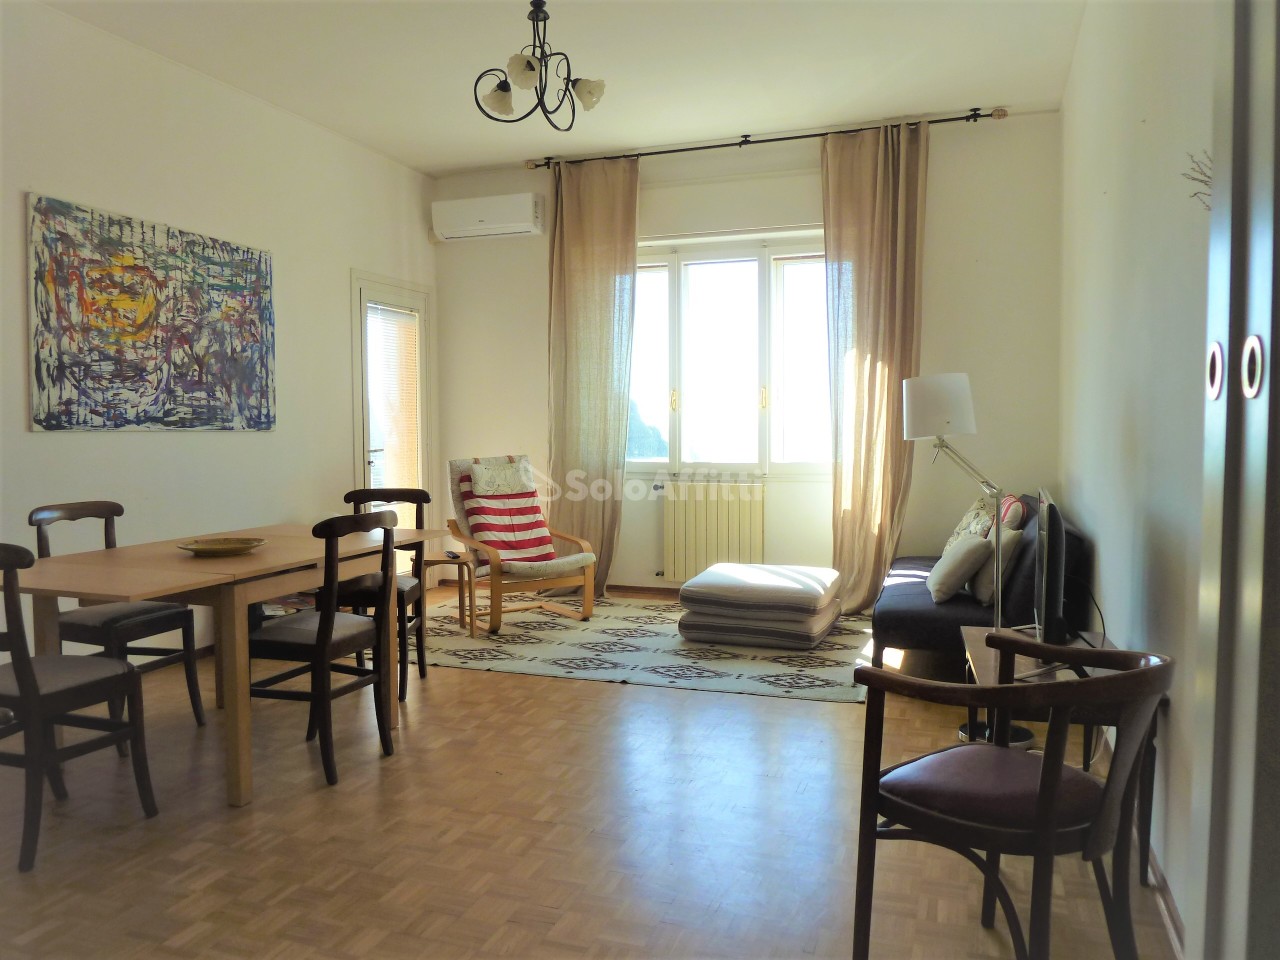 Appartamento in affitto a SanRemo, 7 locali, prezzo € 800 | PortaleAgenzieImmobiliari.it